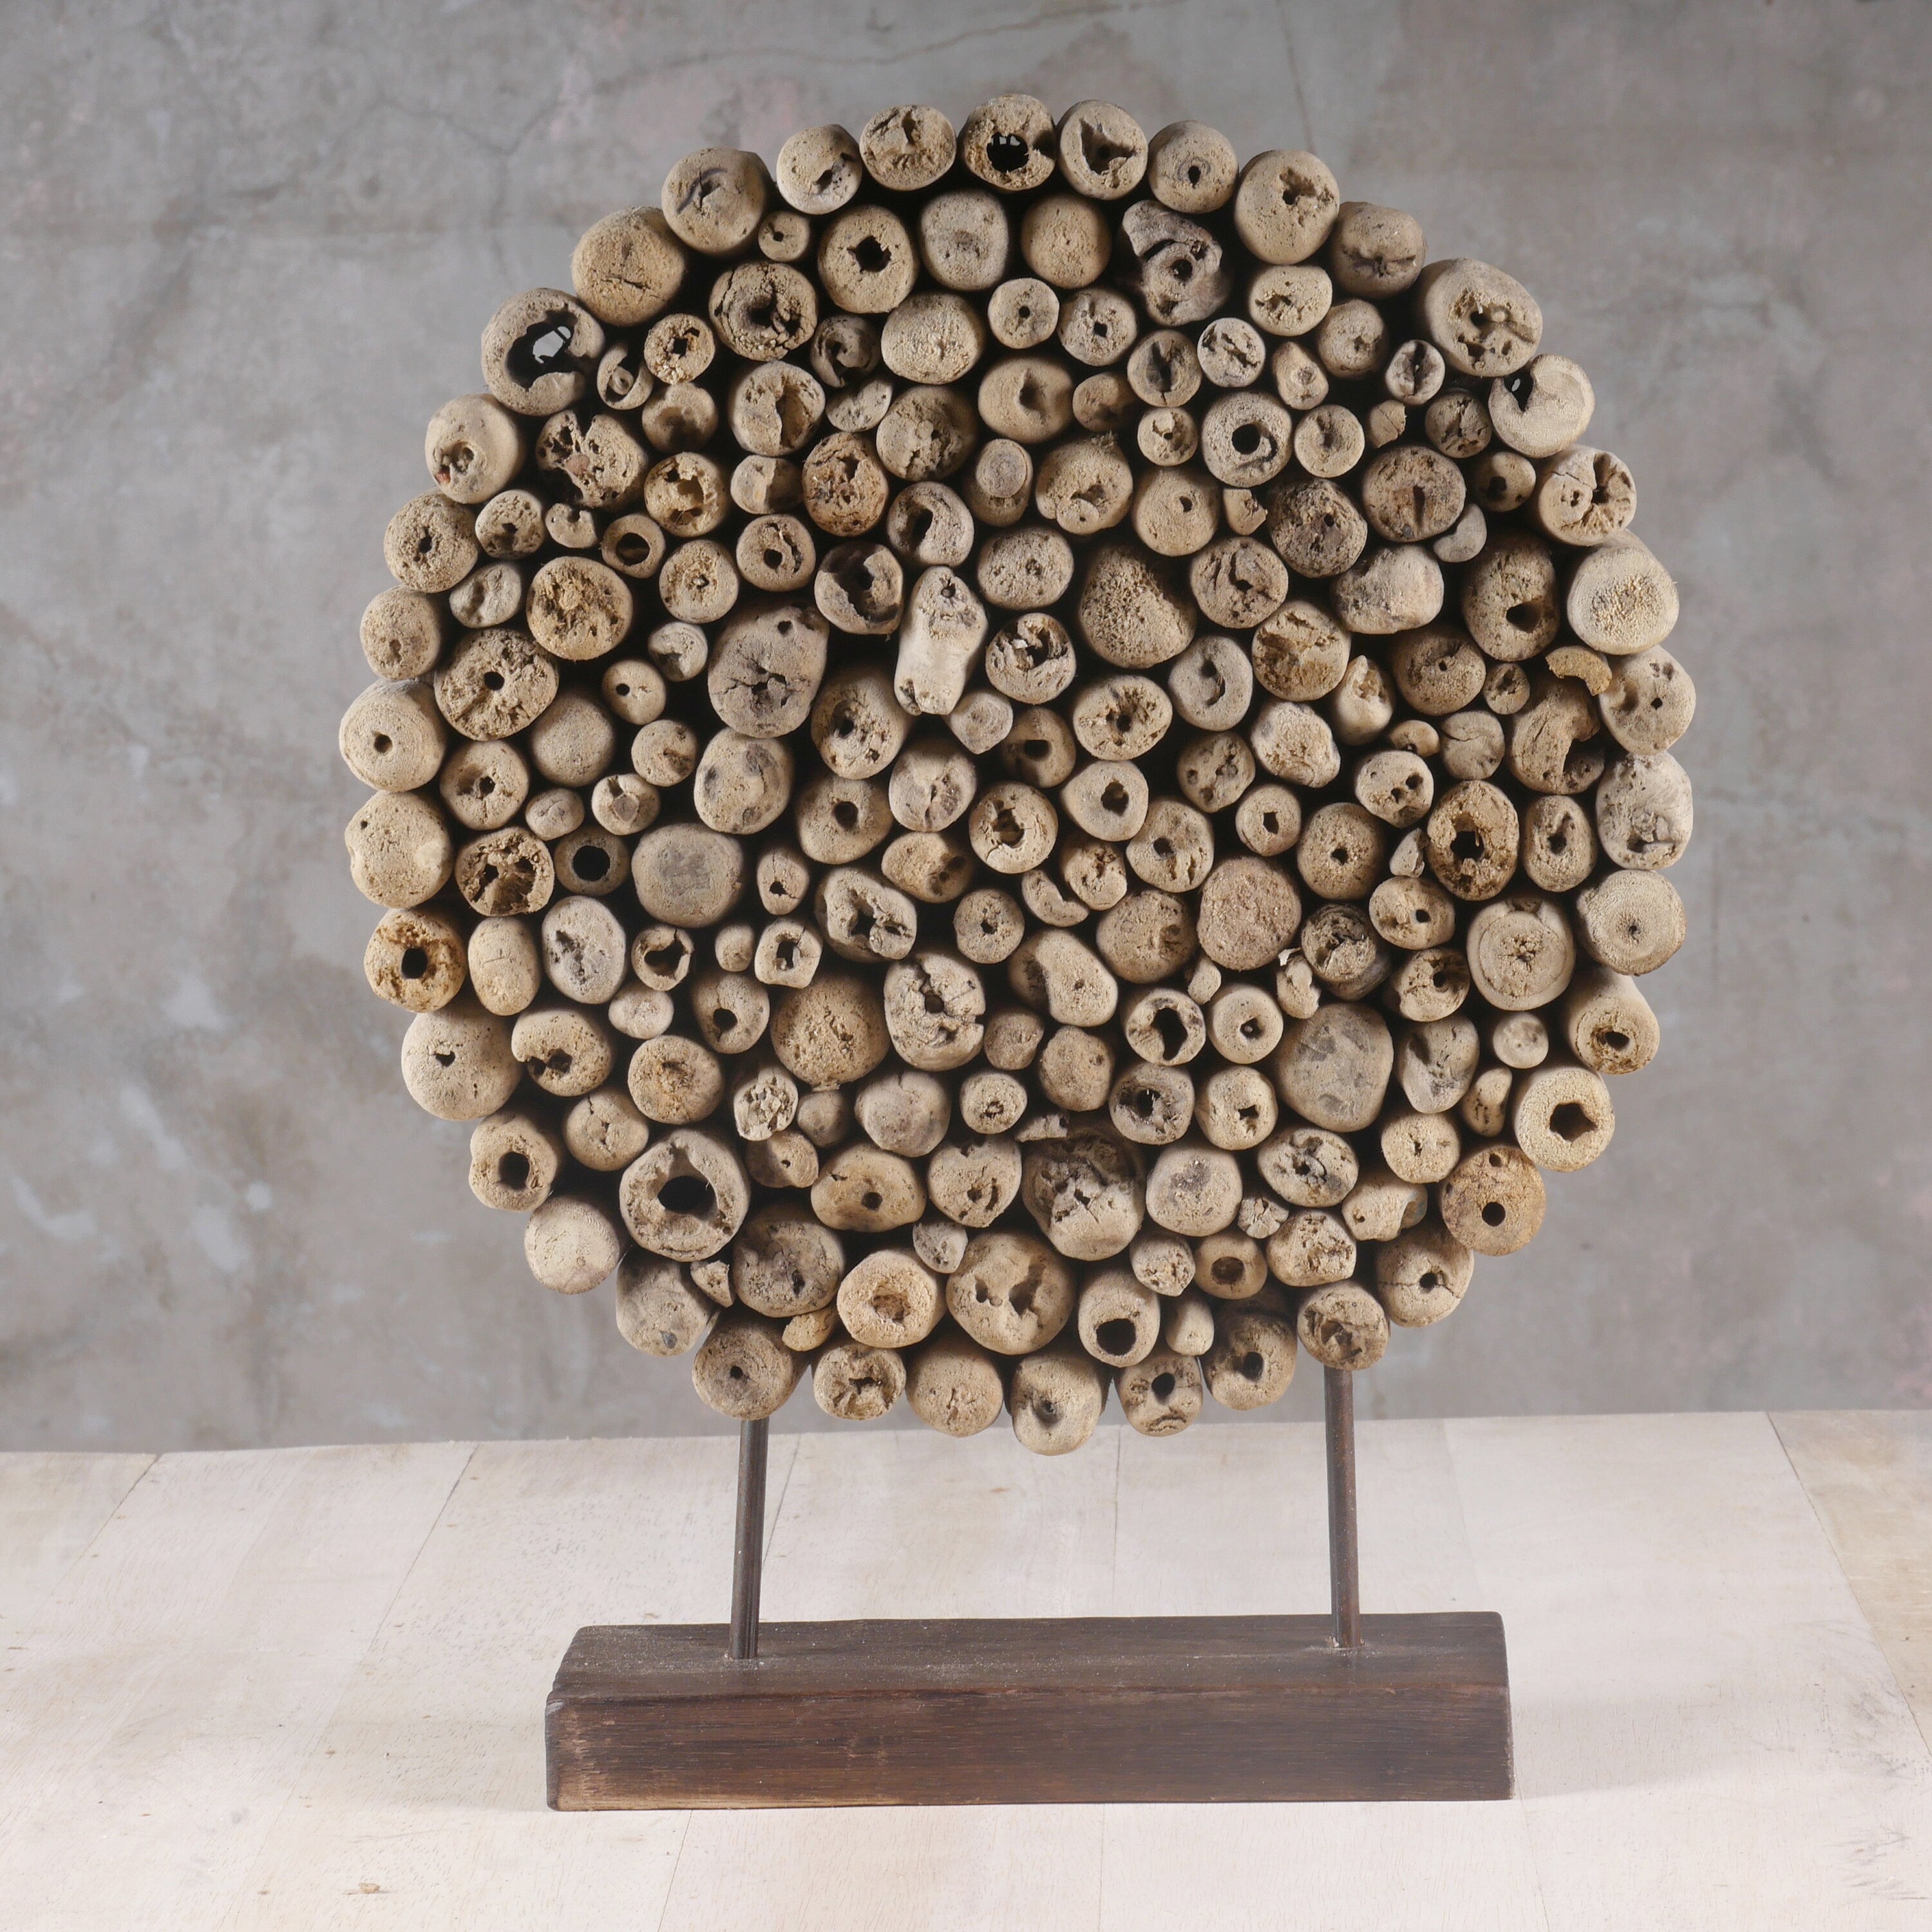 Driftwood Art Sculpture - Driftwood Art - Tabletop Driftwood Deco - Contemporary Driftwood Circle Sculpture